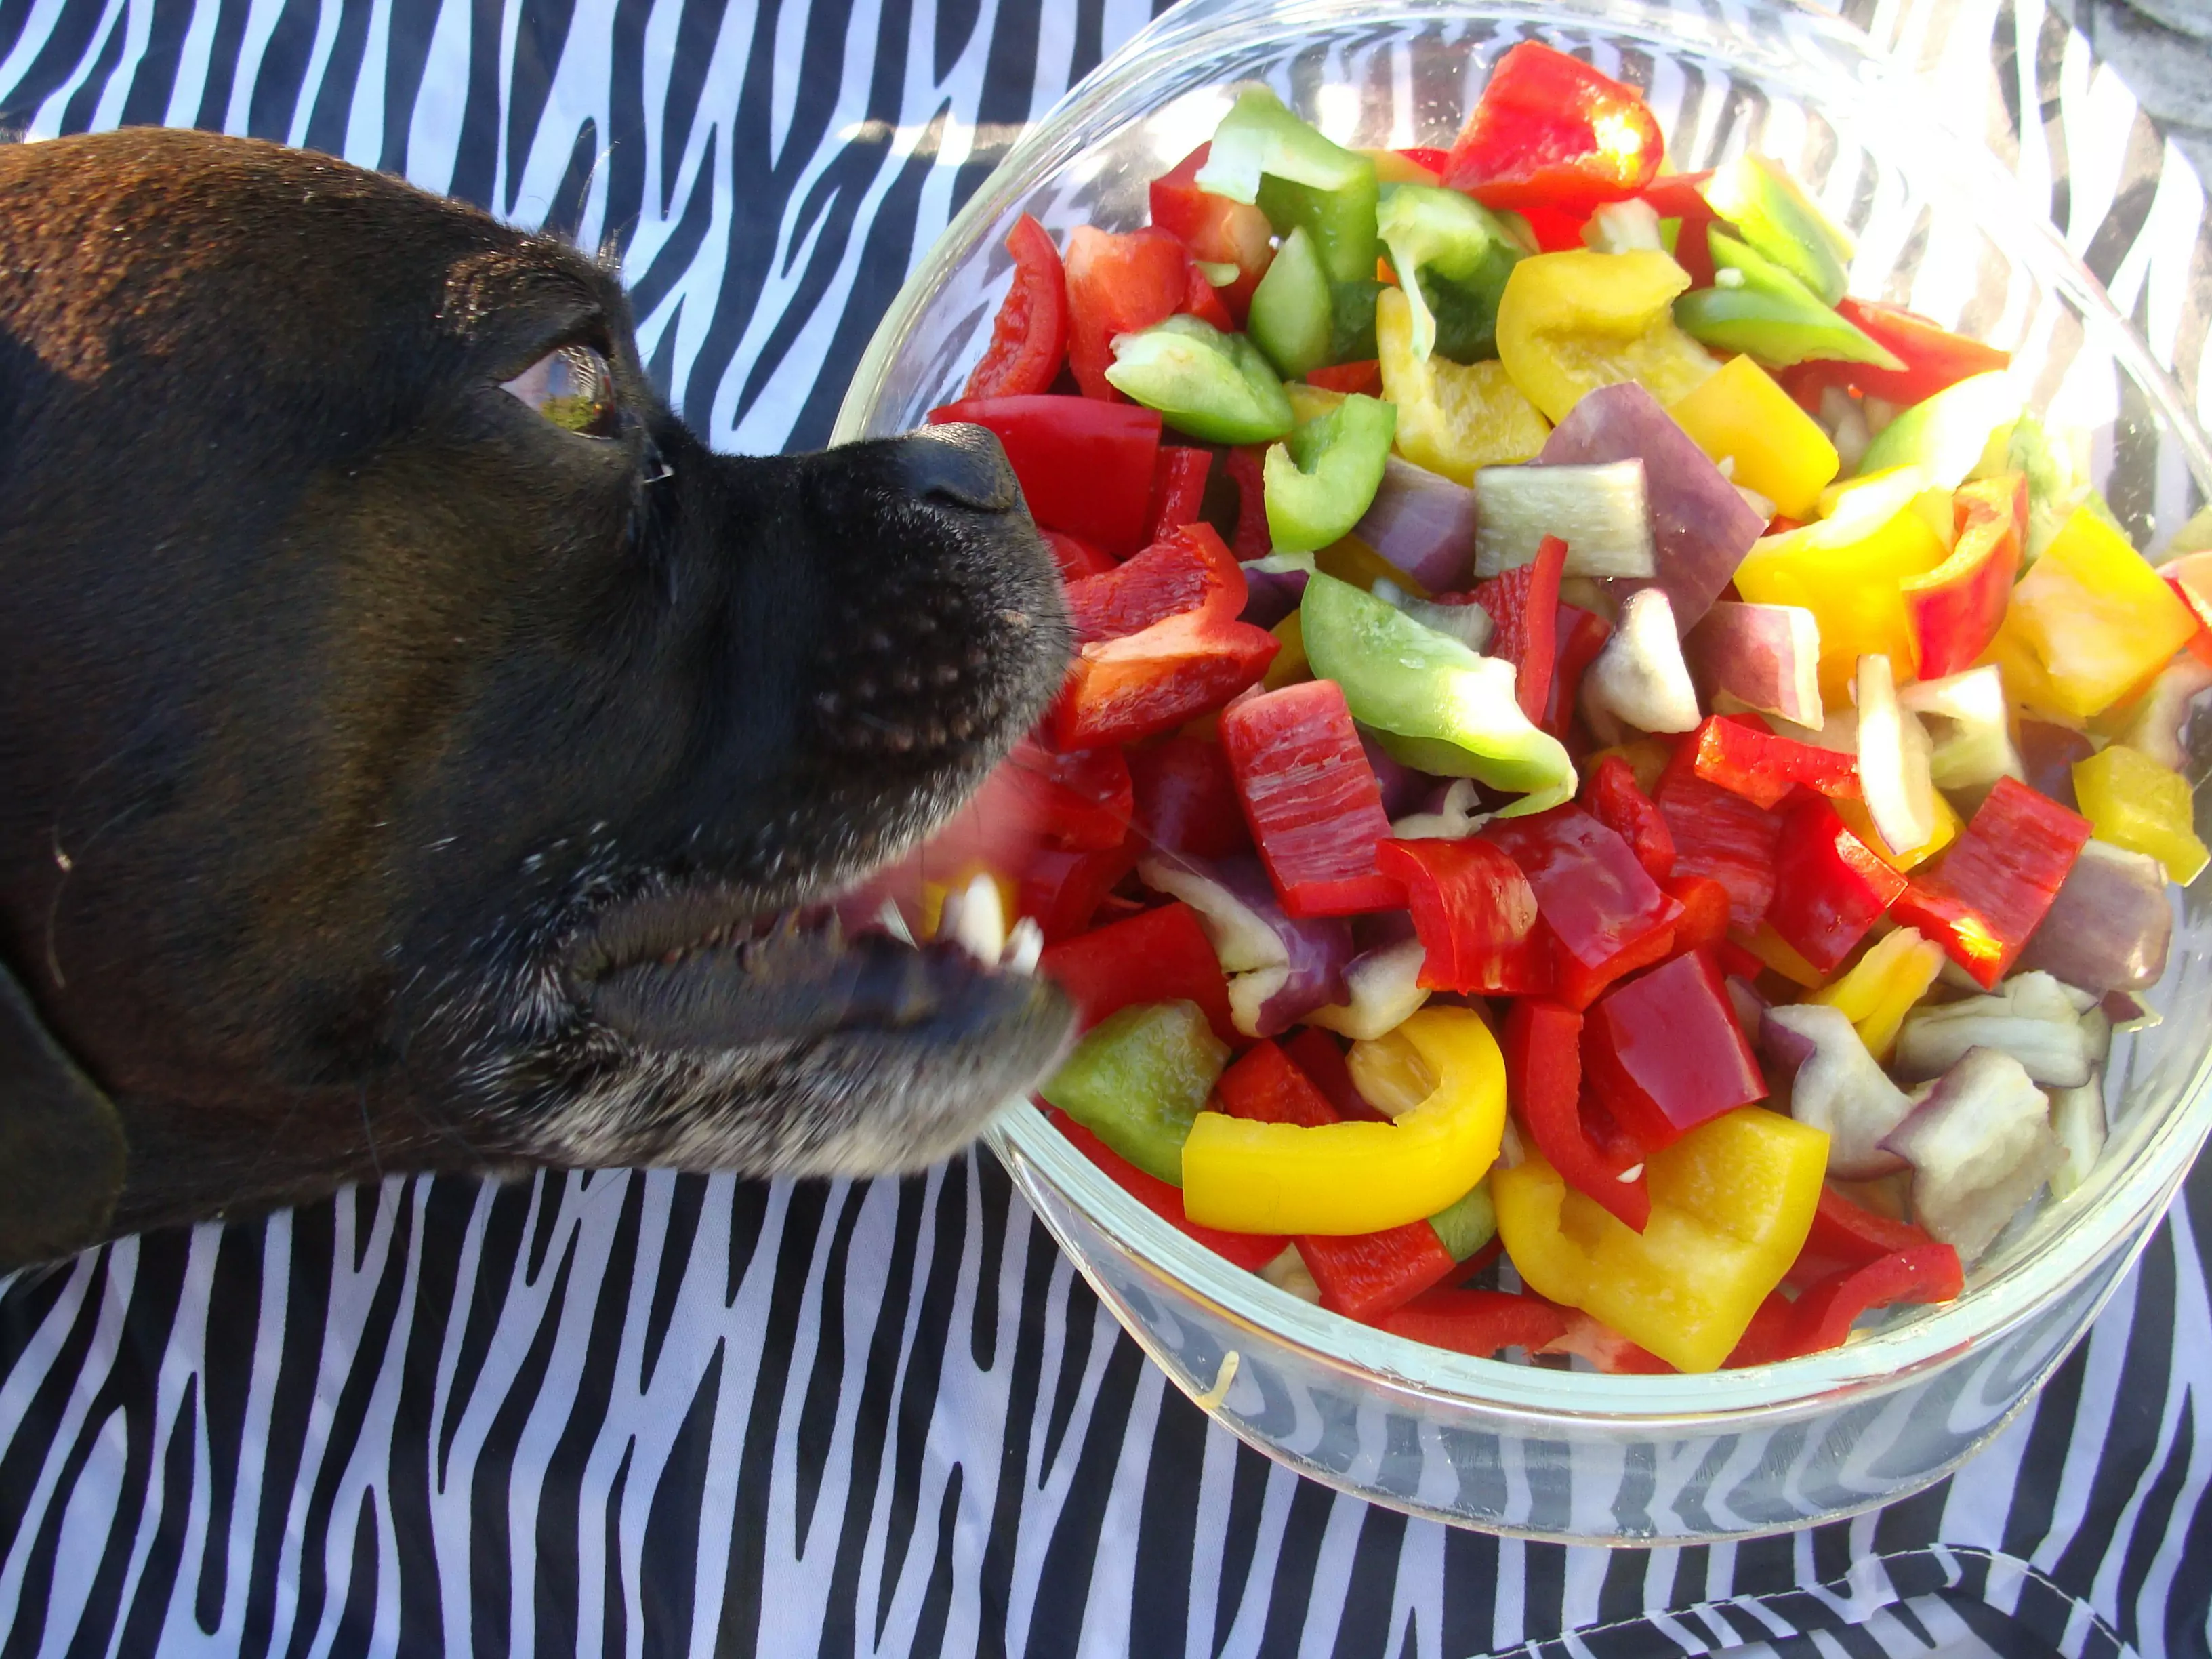 I cani possono mangiare il peperoncino? I cani mangiano il peperoncino come fare